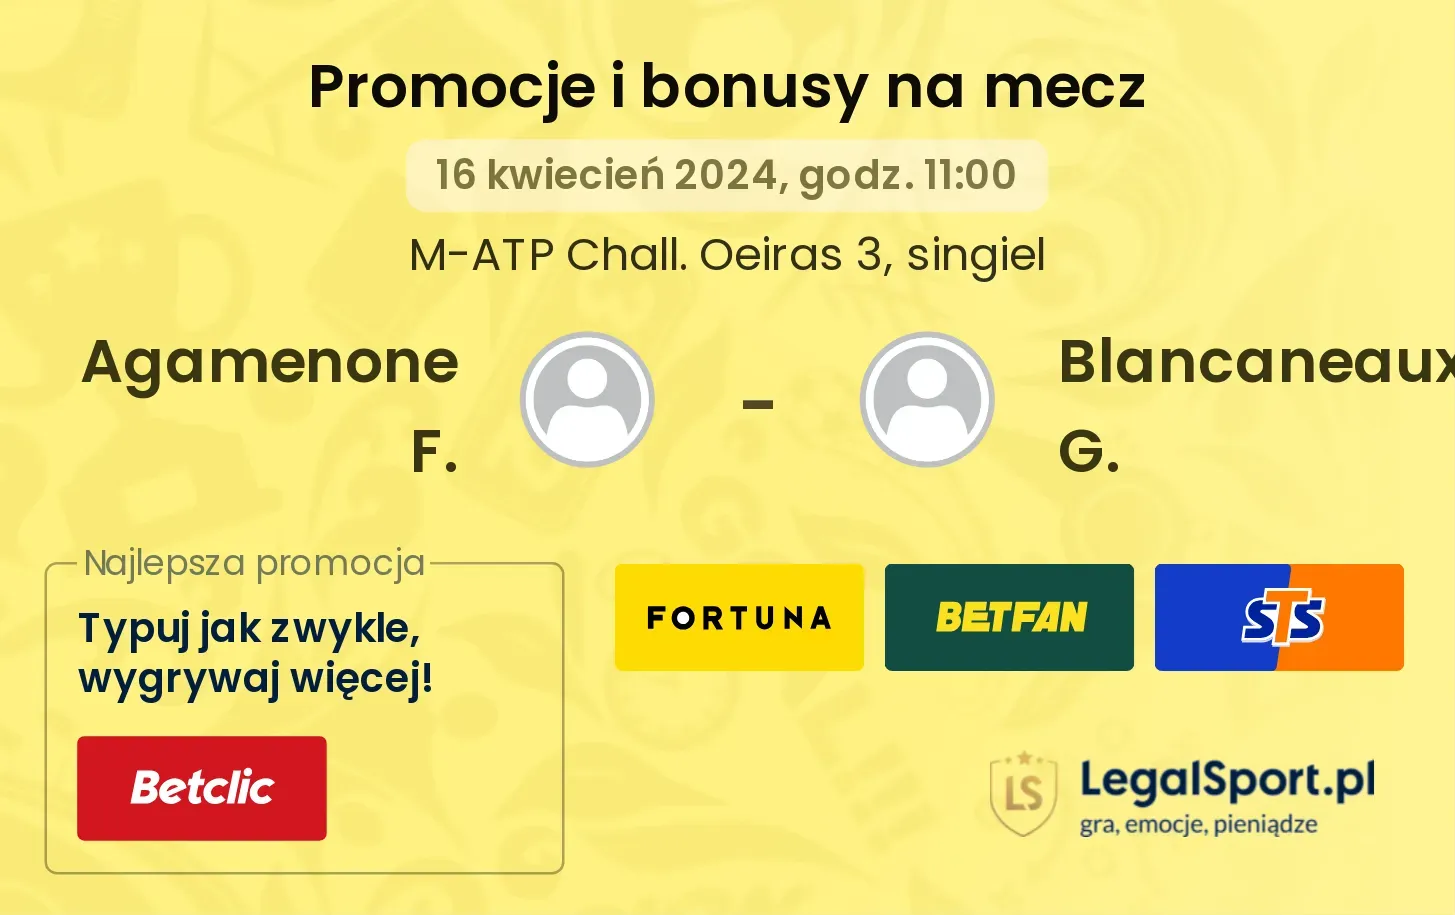 Agamenone F. - Blancaneaux G. promocje bonusy na mecz